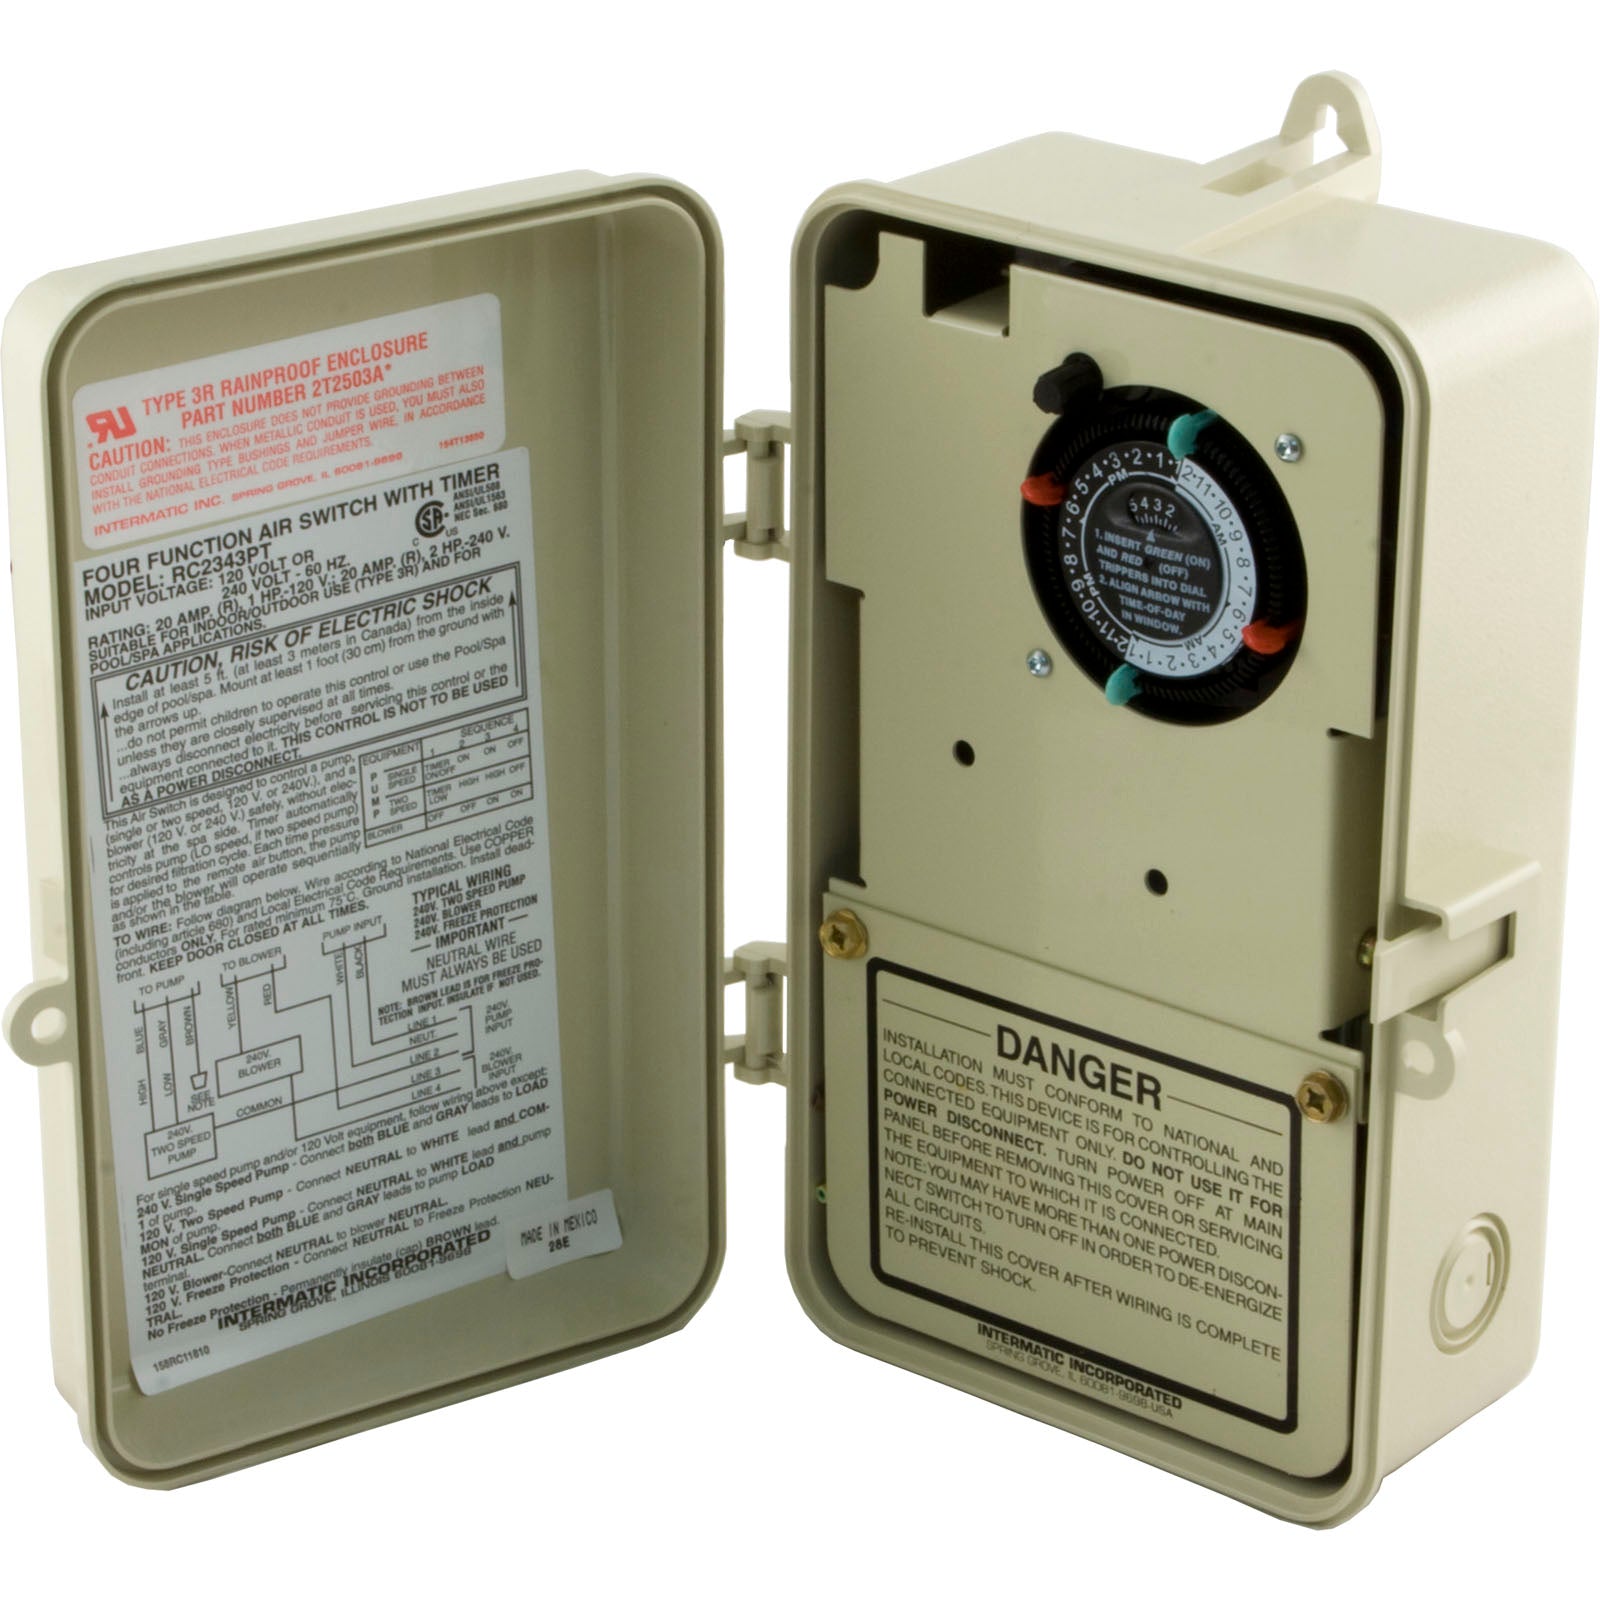 Allied/Len Gordon Four Function Air Switch Control [FF-1094LTC] [Replaces FF-1000LTC] (910108-007)